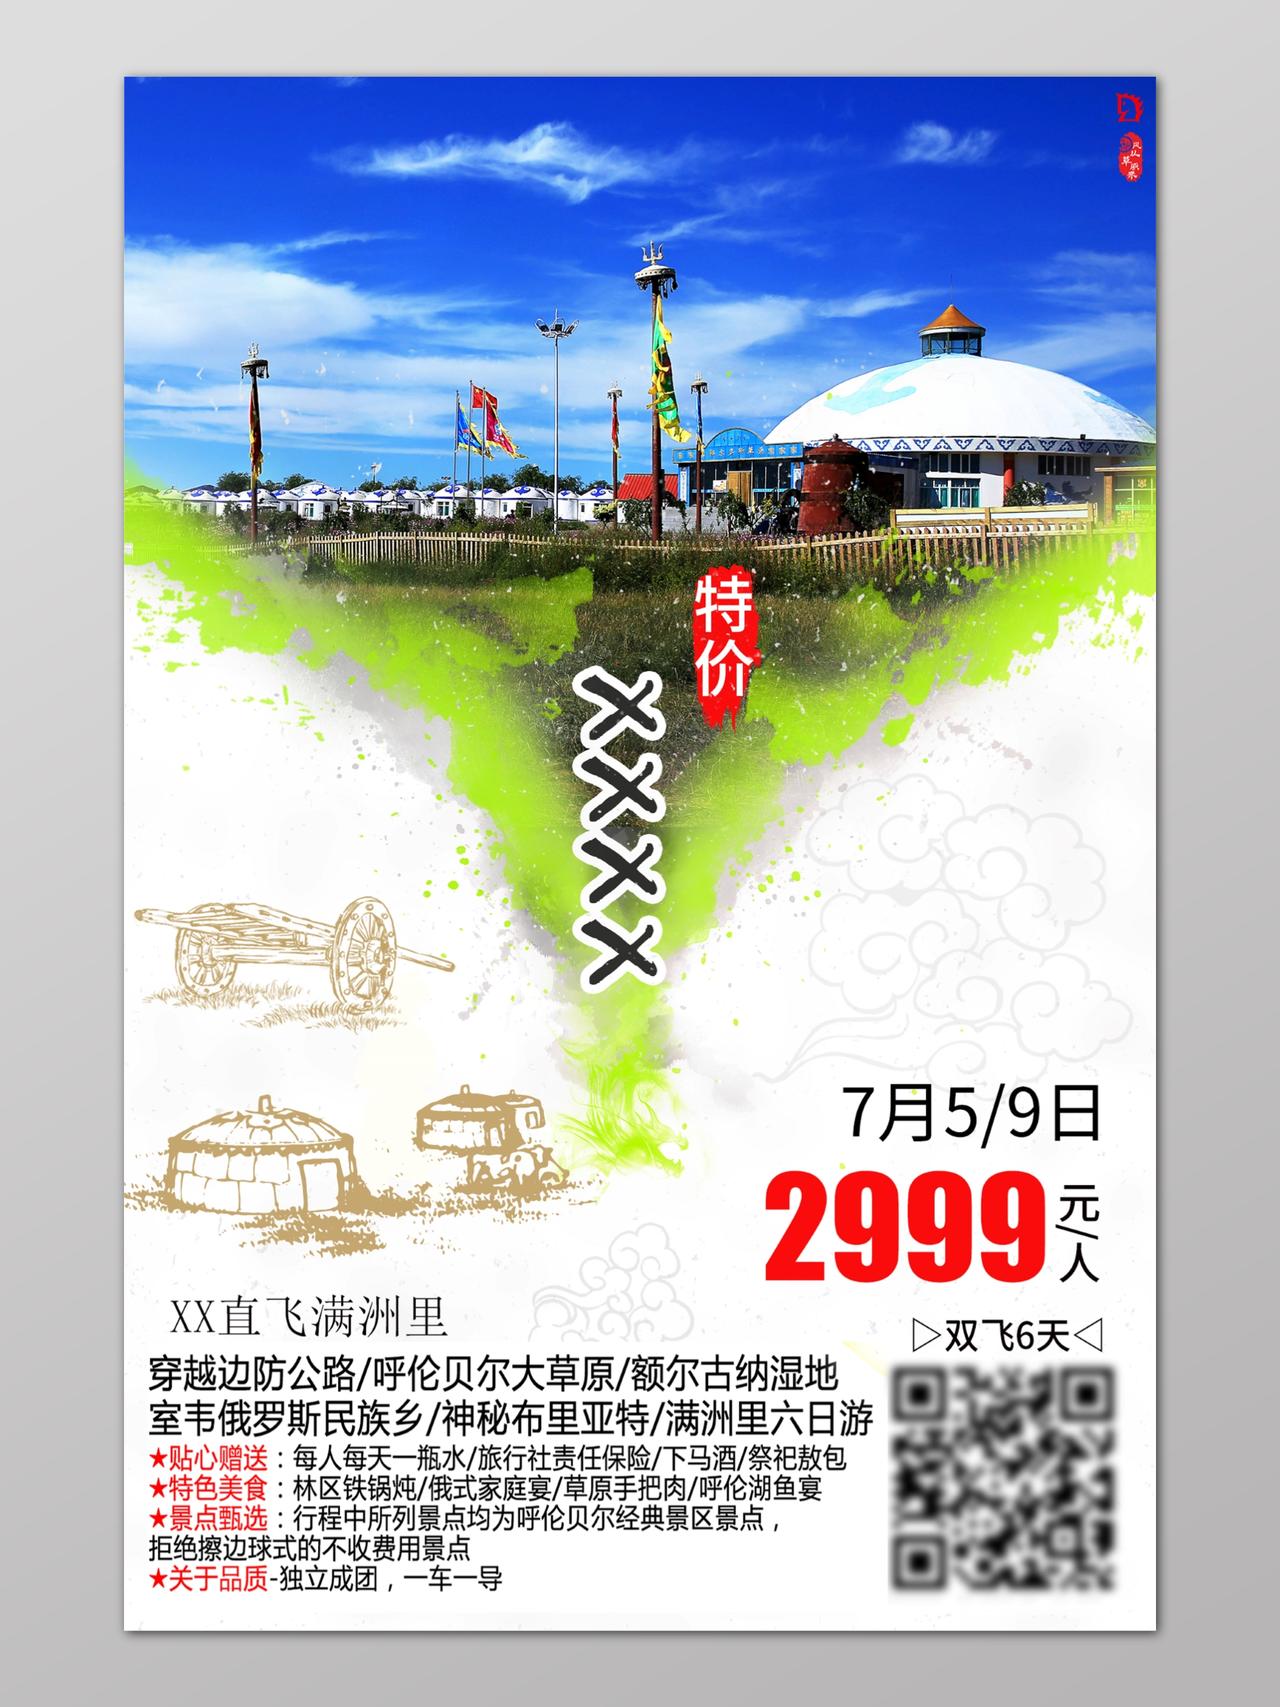 线条画蒙古包草原旅游特价优惠海报